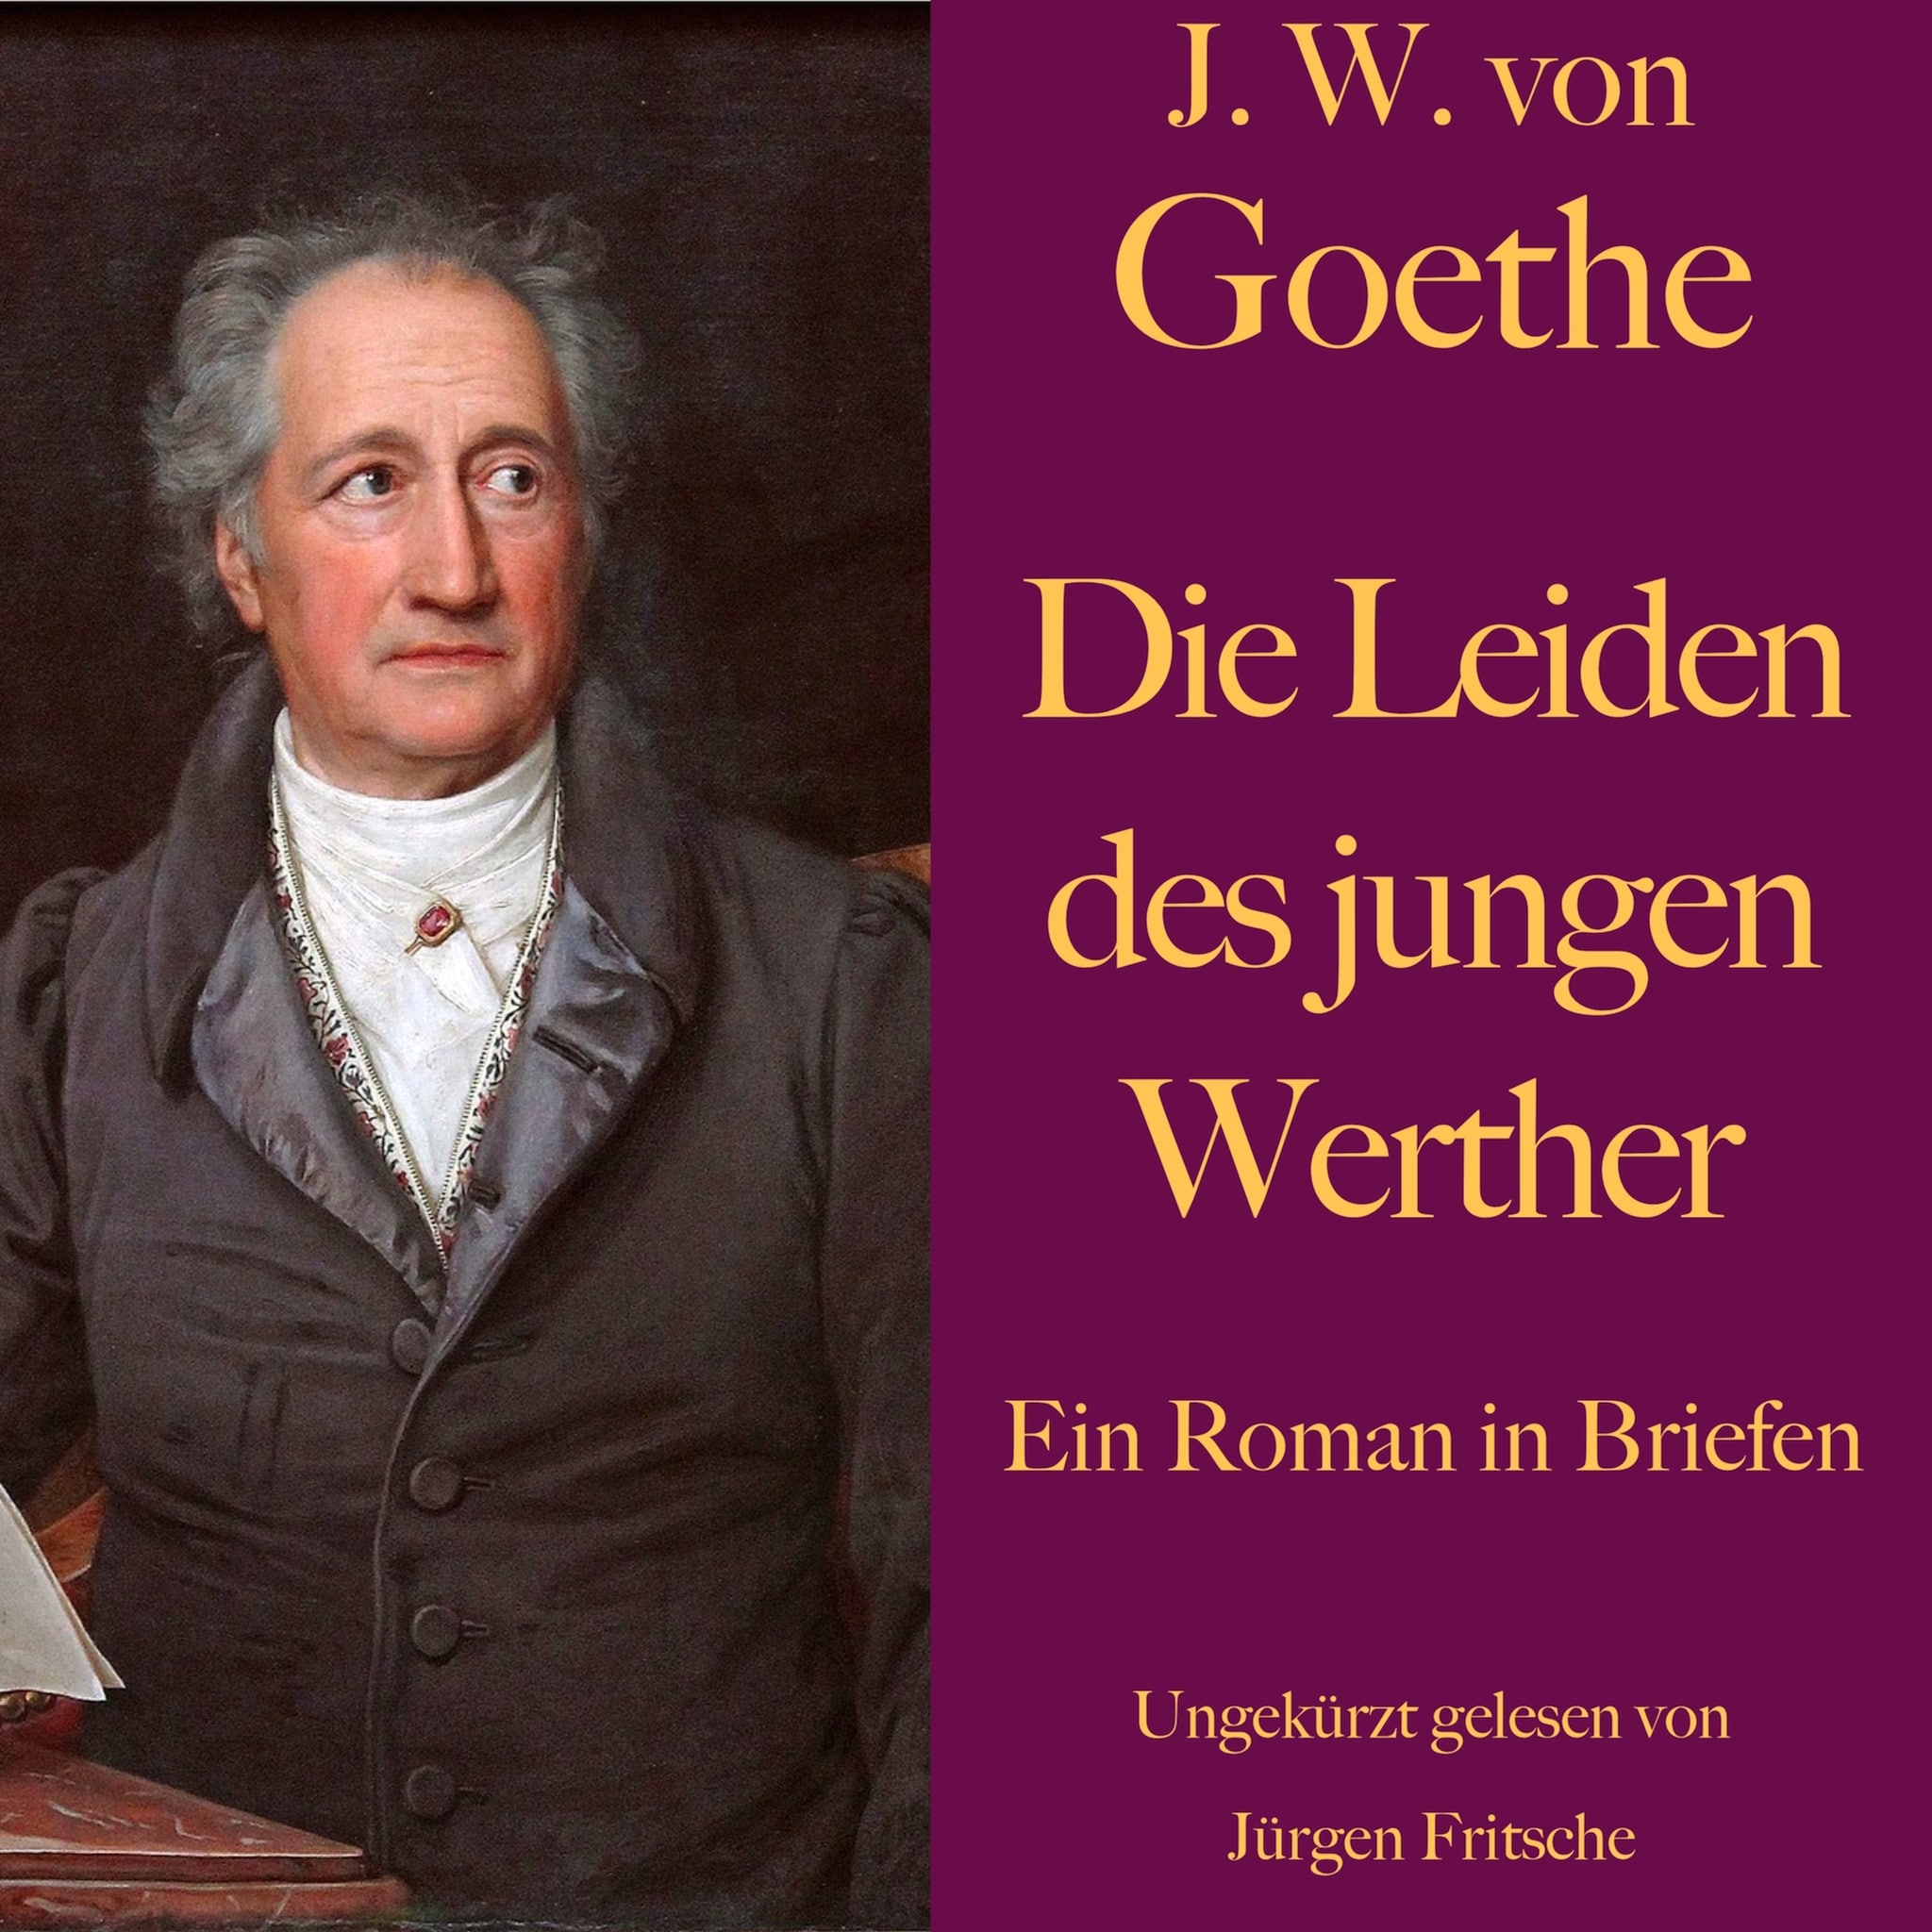 Die Leiden des jungen Werther - Band I by Johann Wolfgang von Goethe